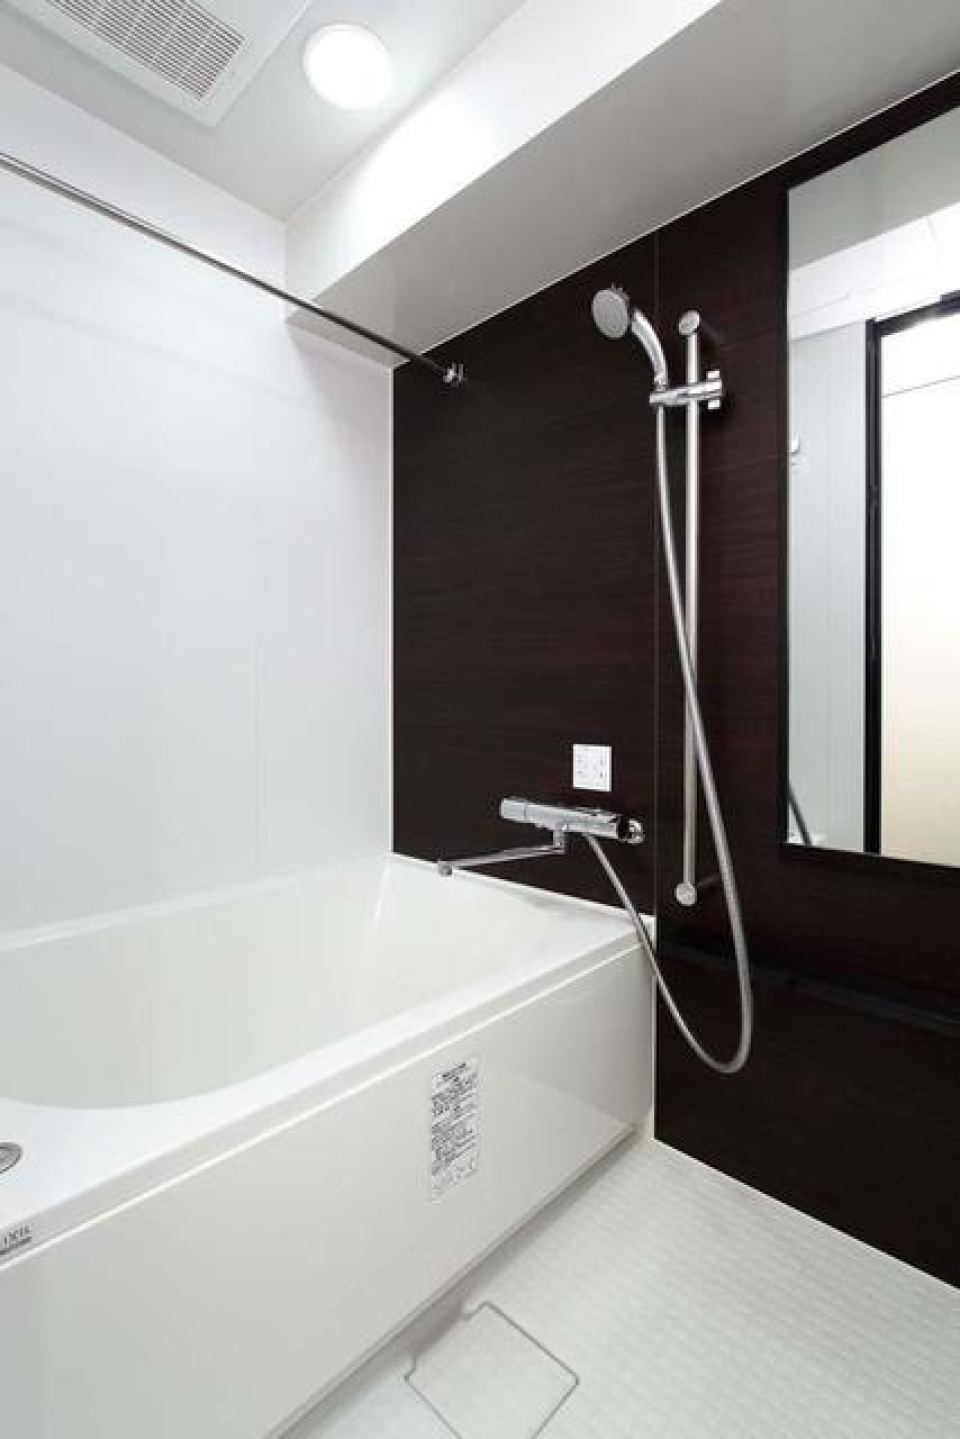 ダークトーンのパネルで落ち着いた印象の浴室です。※写真は同タイプ住戸です。